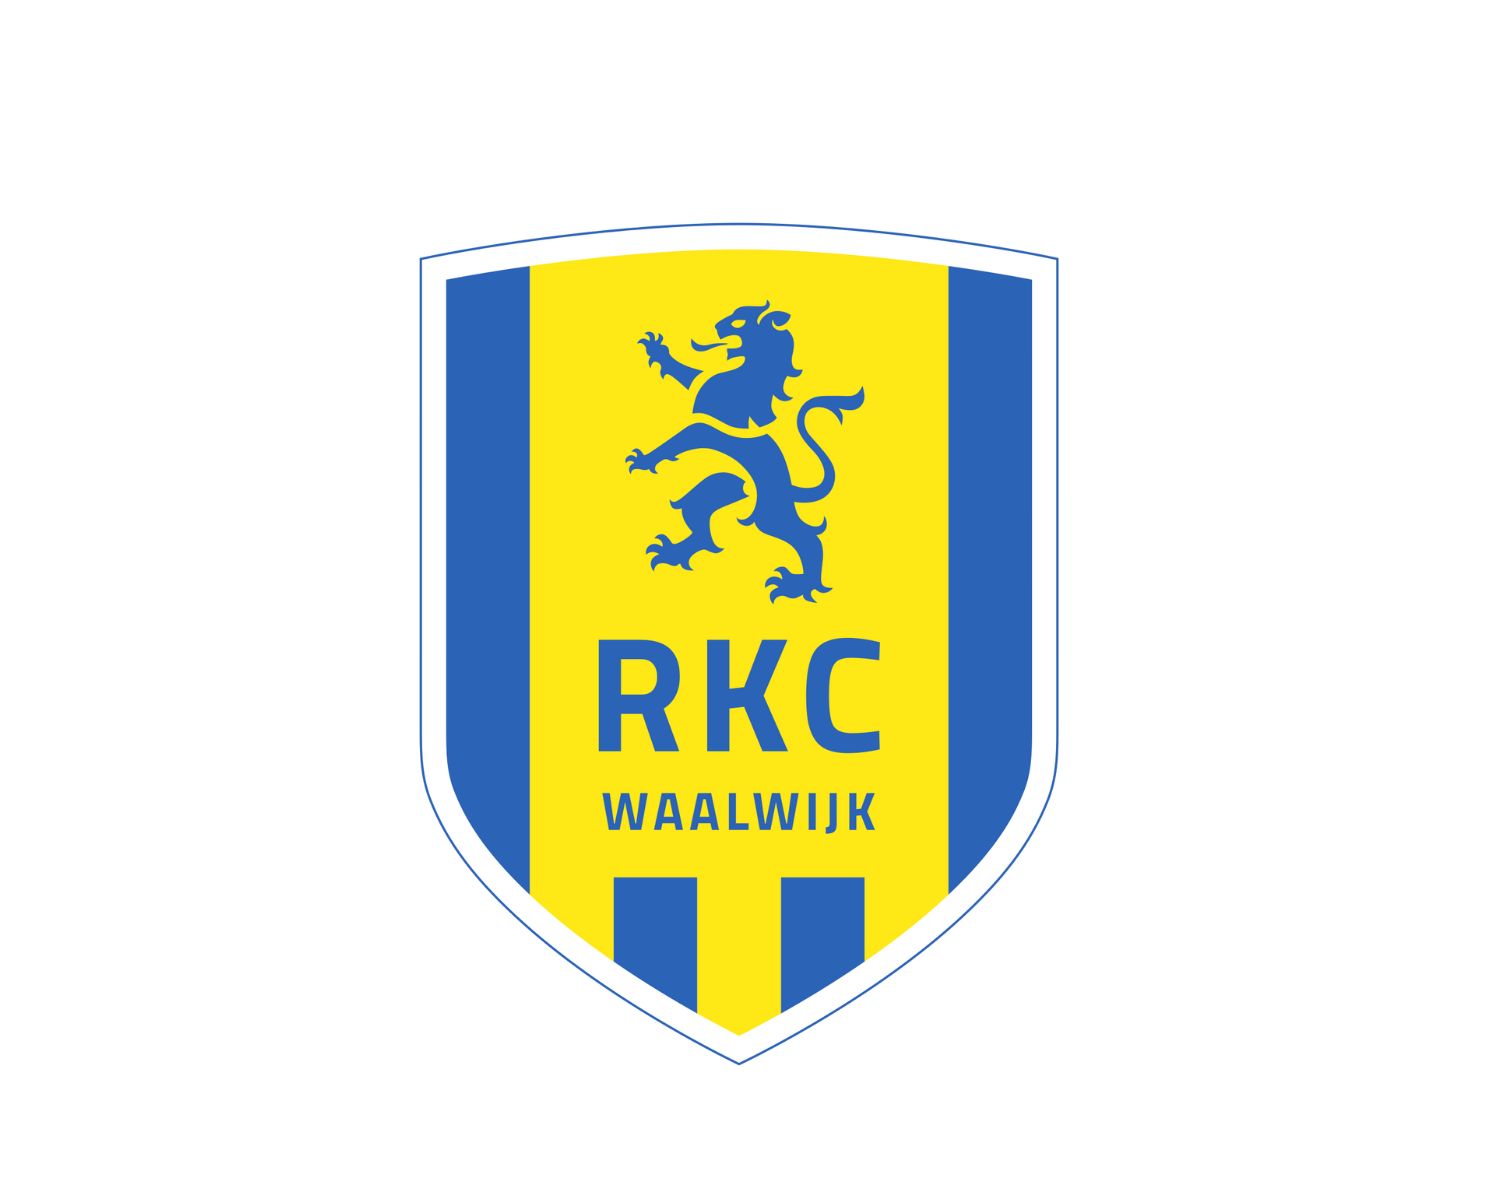 rkc-waalwijk-13-football-club-facts